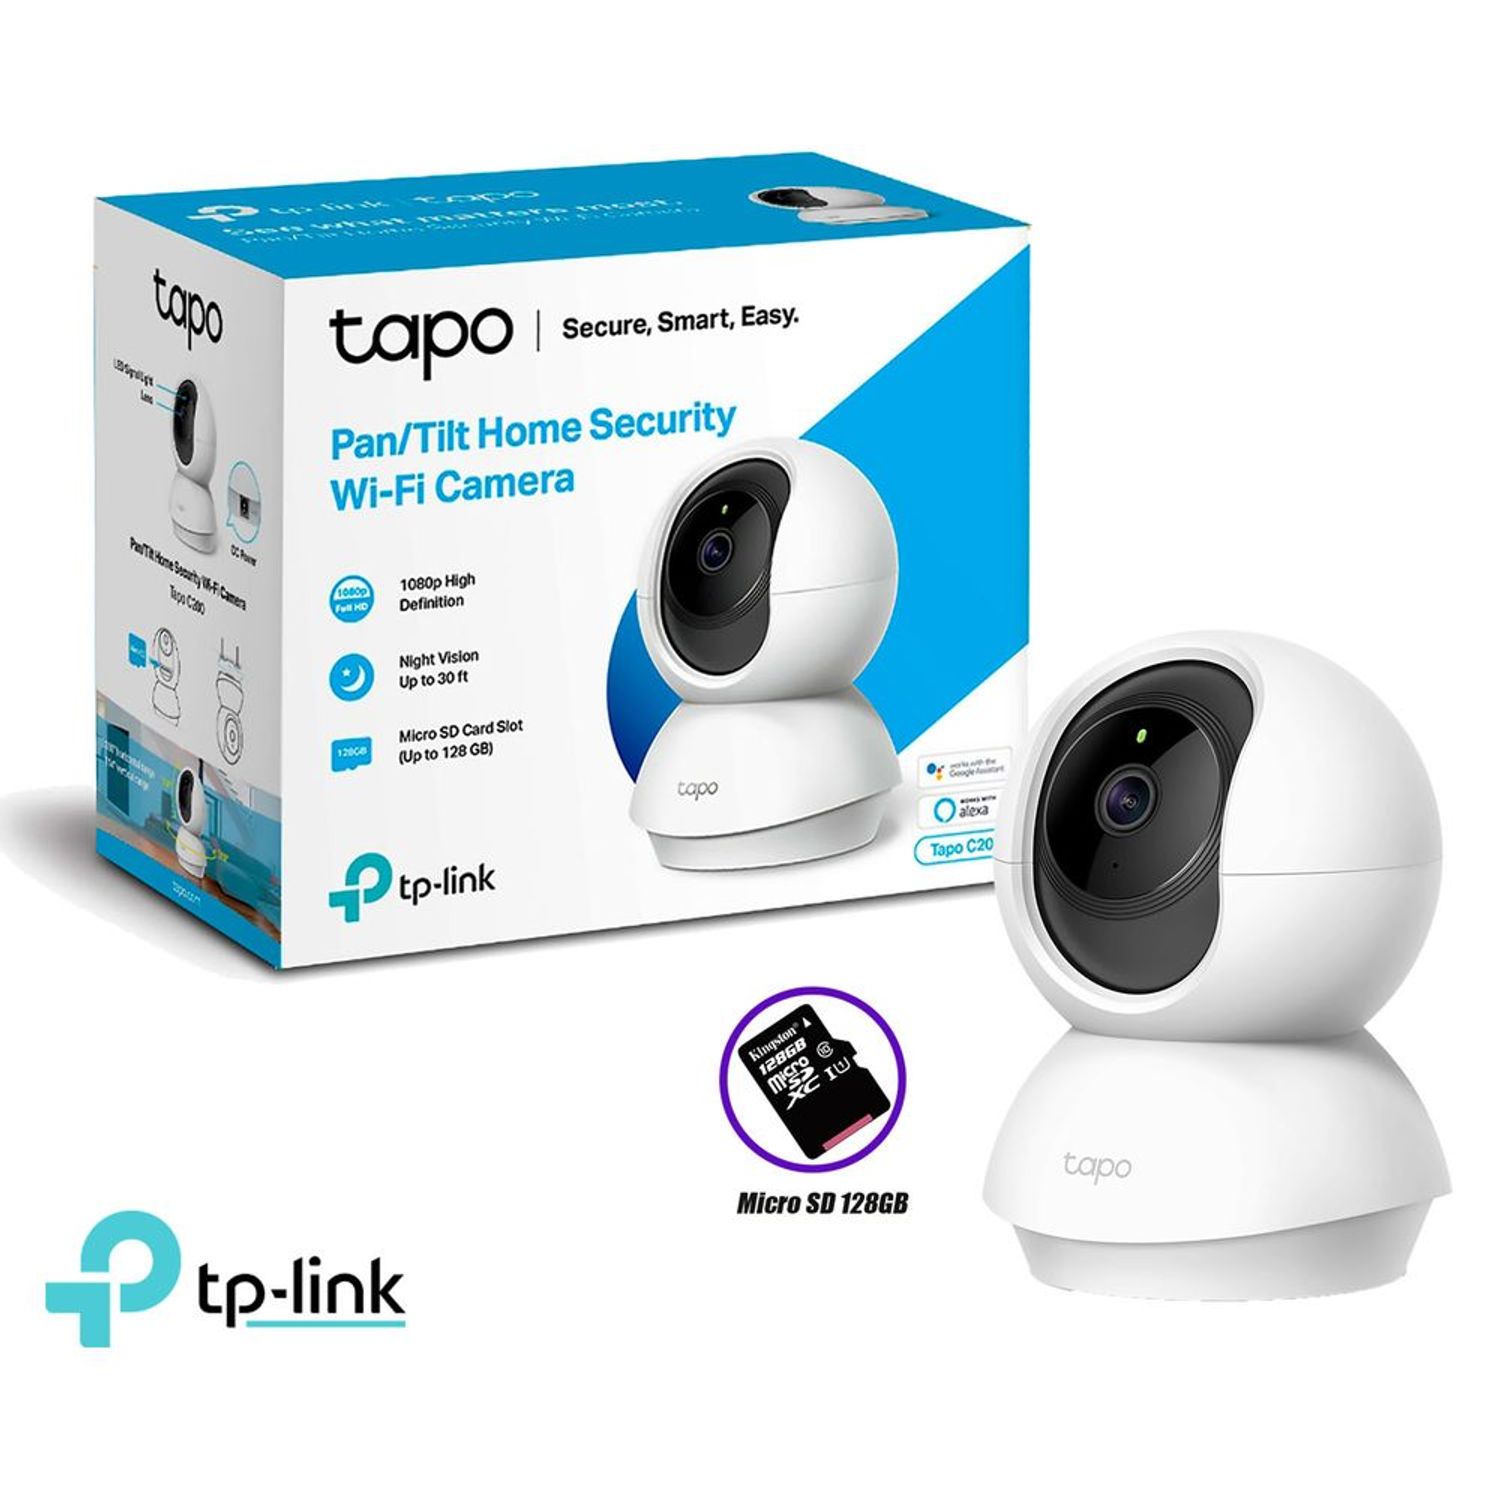 Cámara De Seguridad Tp-link Tapo C200 Wifi Interior Full Hd 1080p - Comprá  en San Juan